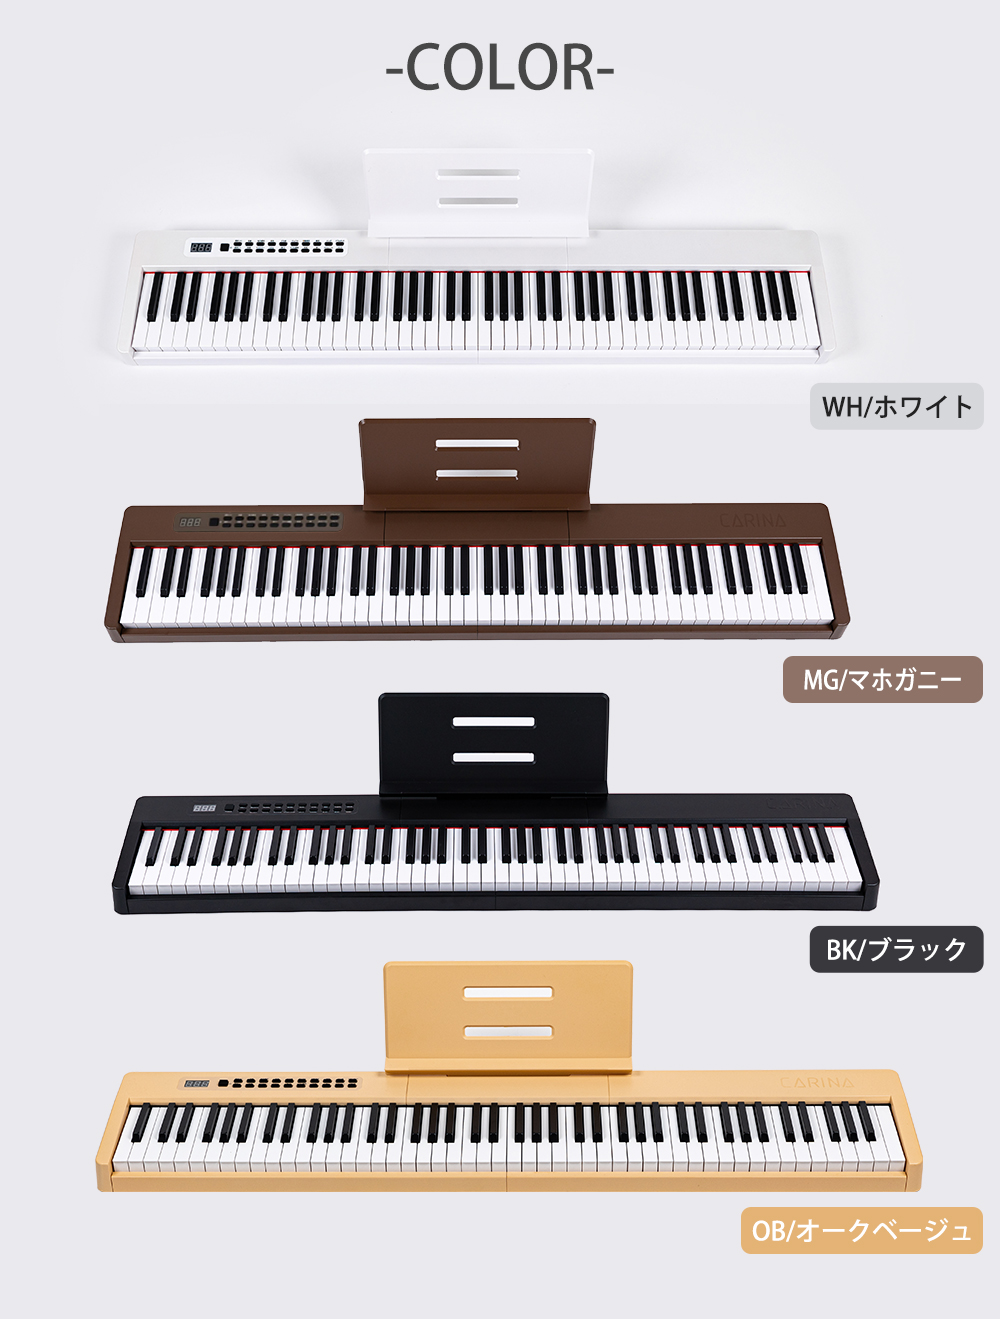 4カラー】電子ピアノ 88鍵盤 スリムボディ 充電可能 dream音源 MIDI 